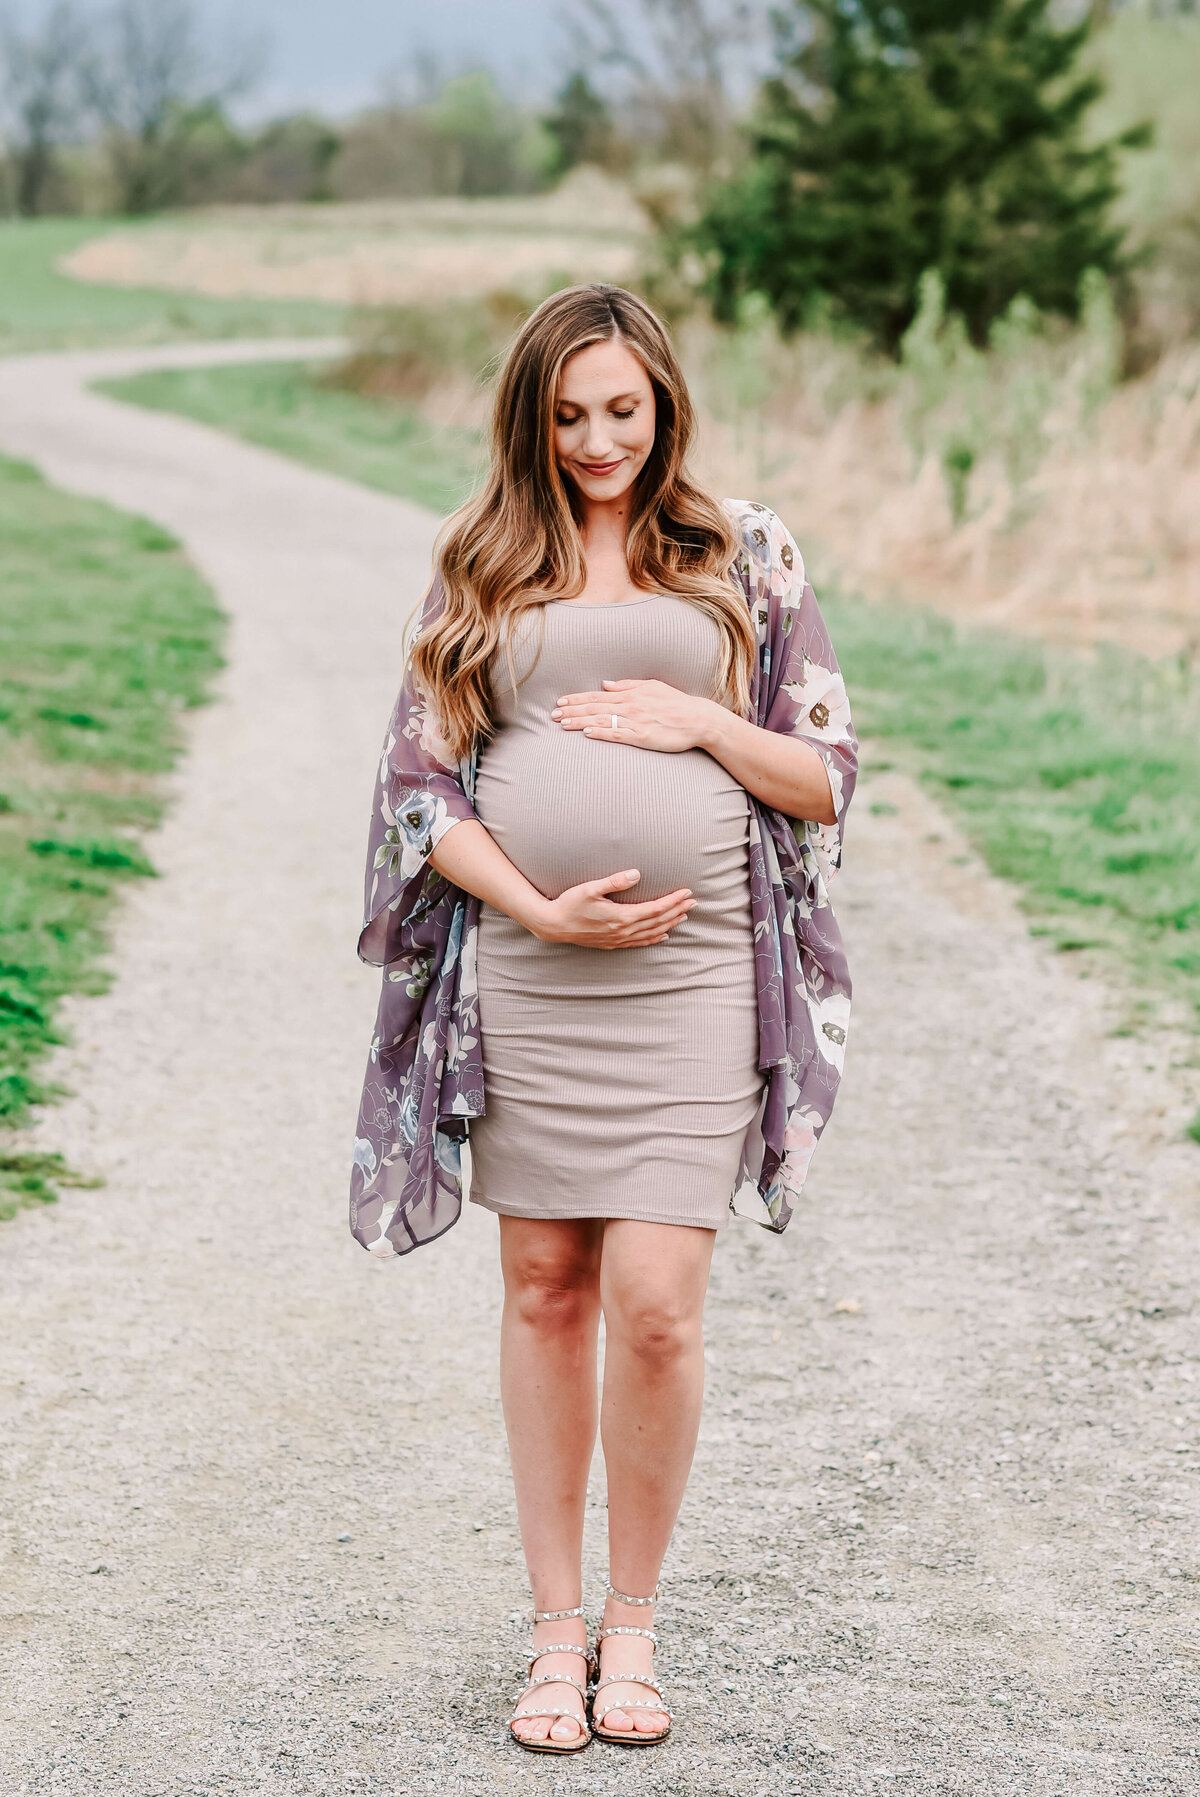 Louisville-Maternity-Photographer-46